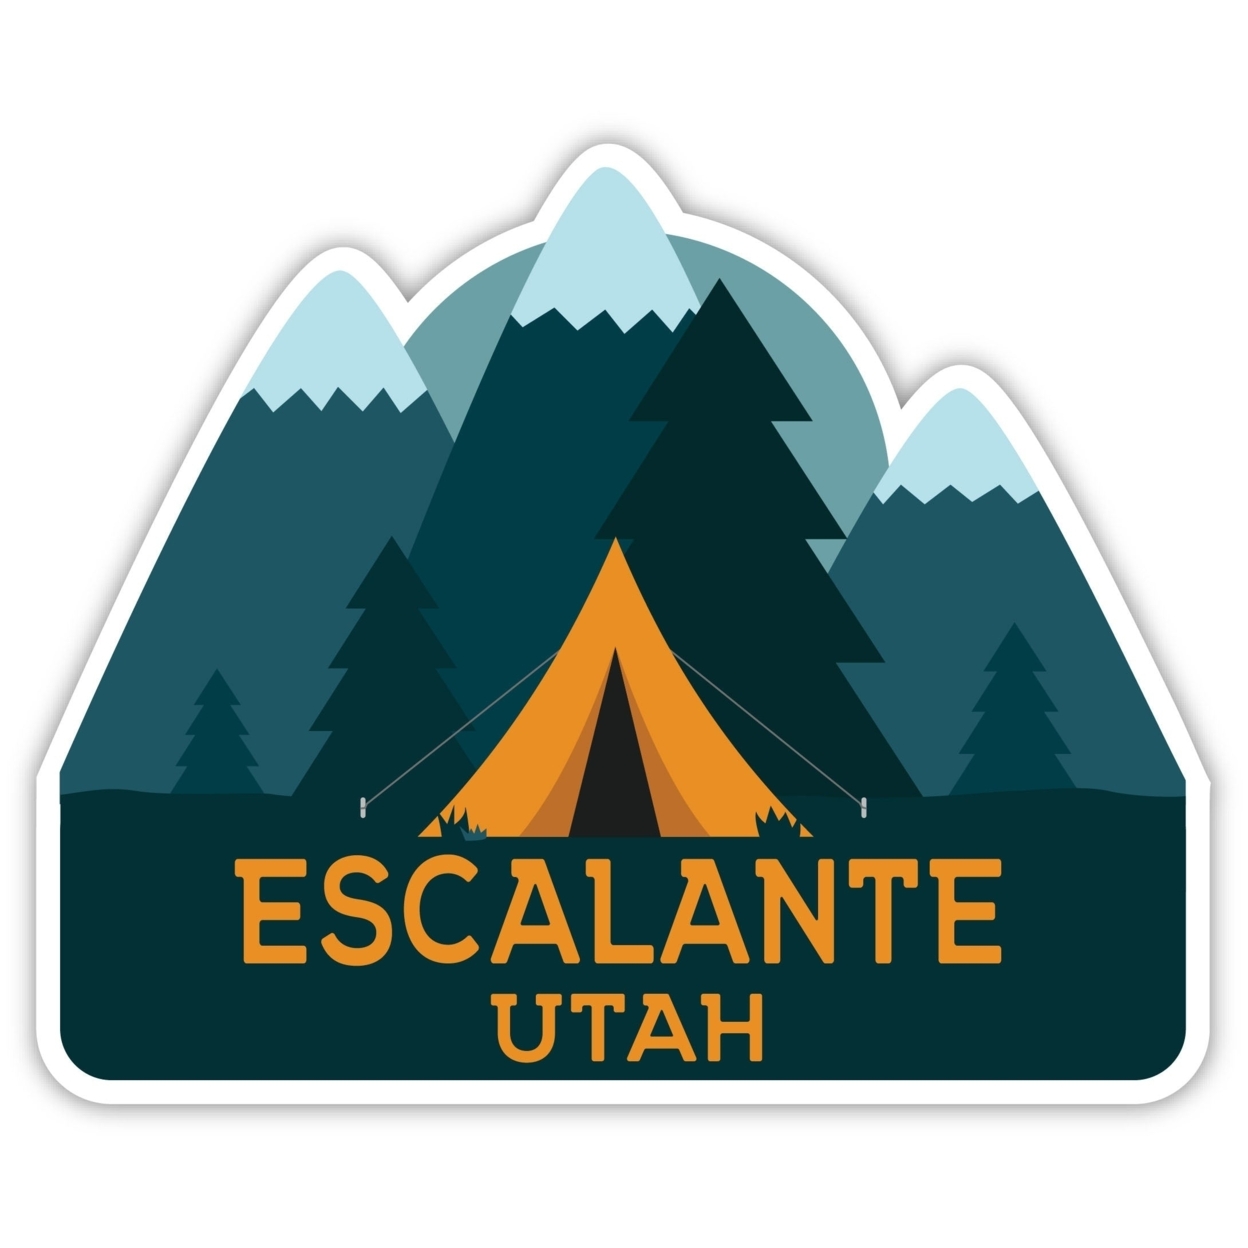 Escalante Utah Souvenir Decorative Stickers (Choose Theme And Size) - Single Unit, 10-Inch, Tent